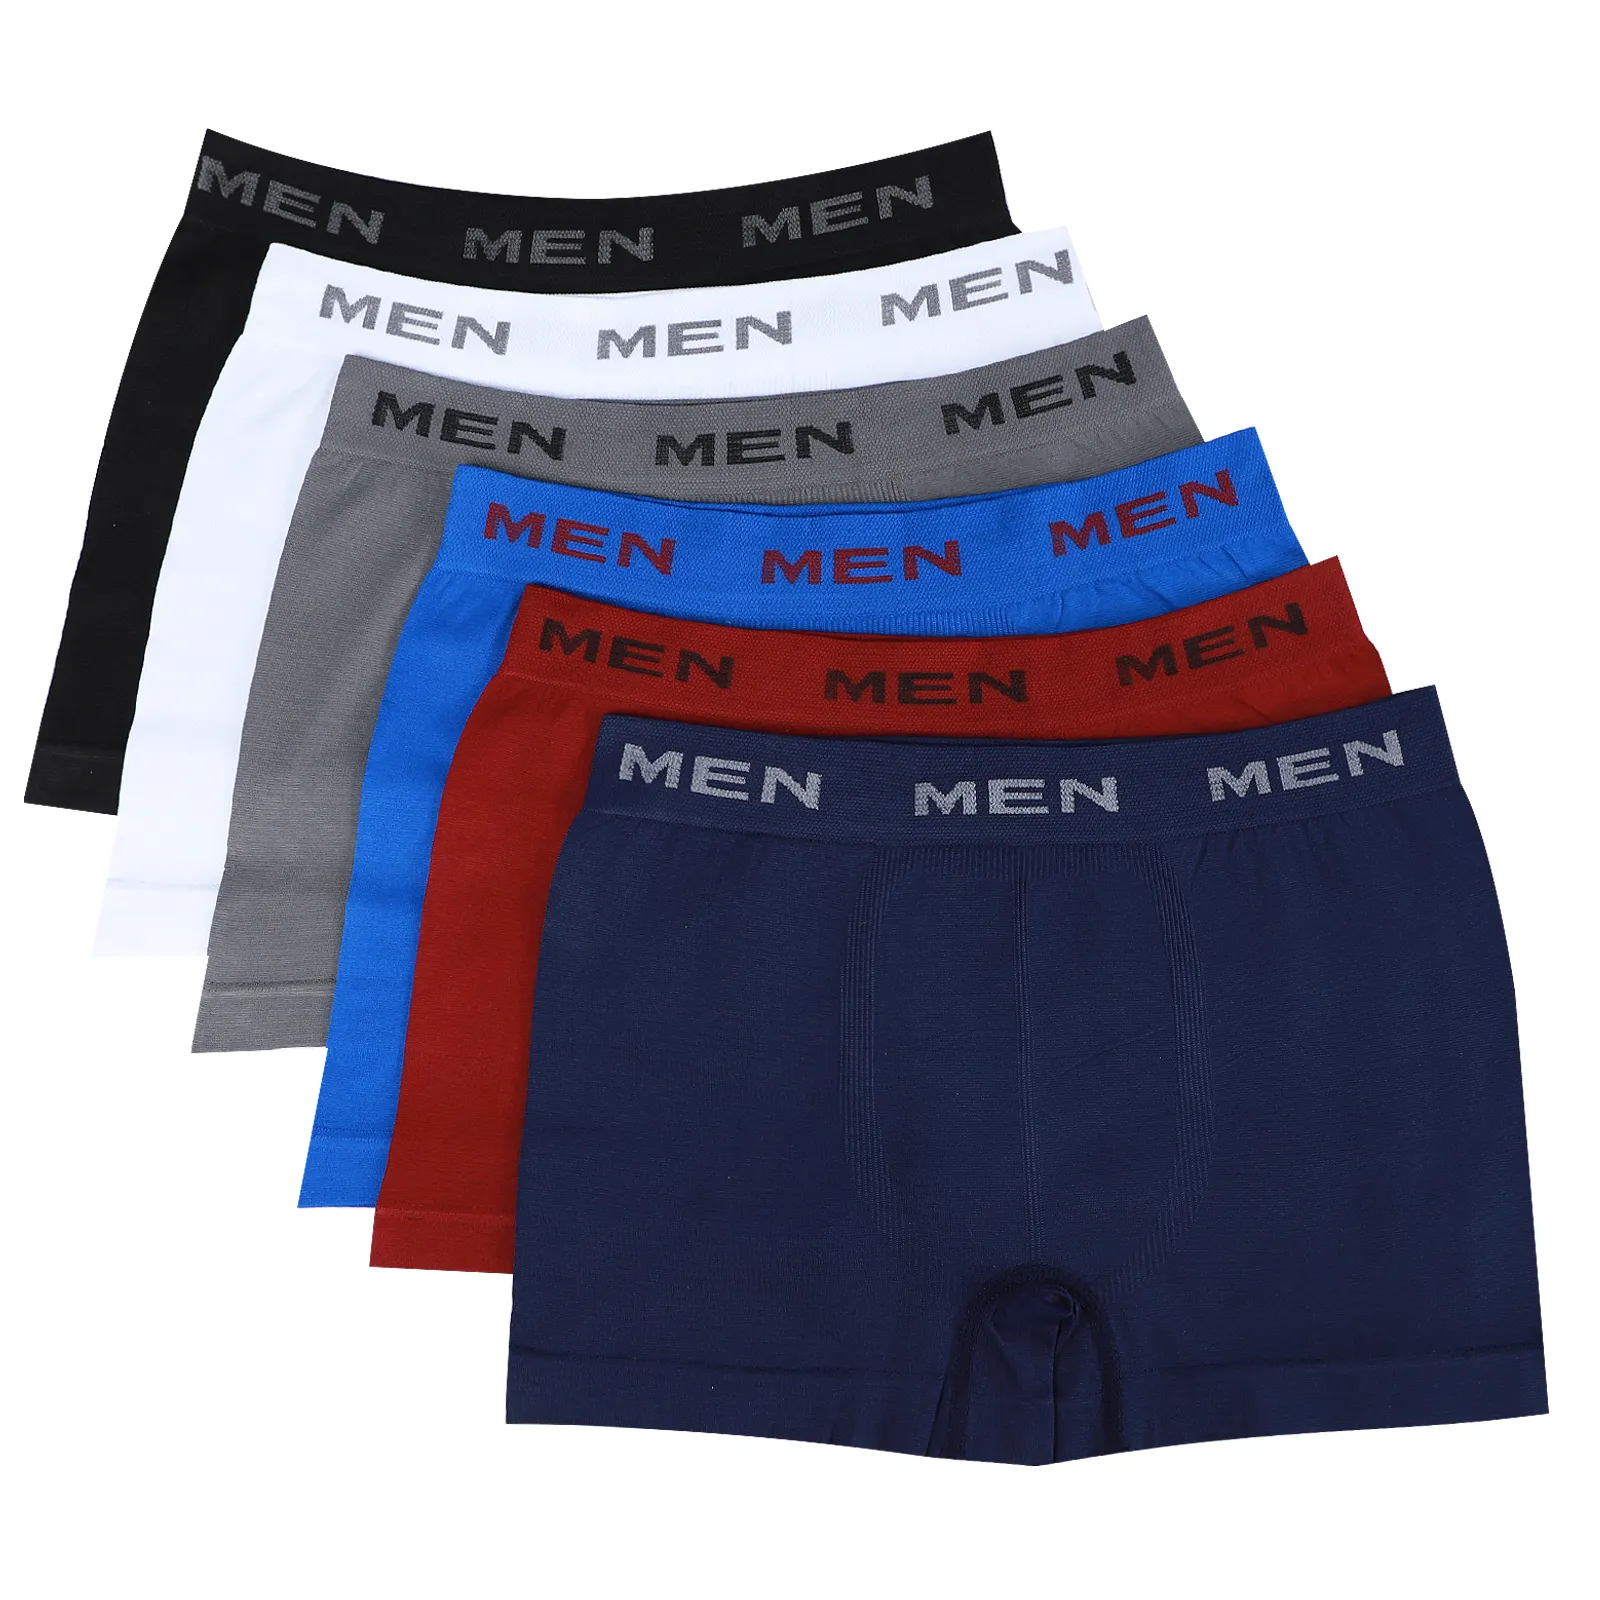 Sous-vêtements sans couture pour hommes, boxer blanc noir, couleur unie, sous-vêtement en polyester pour homme adulte, stock en vrac, A0246